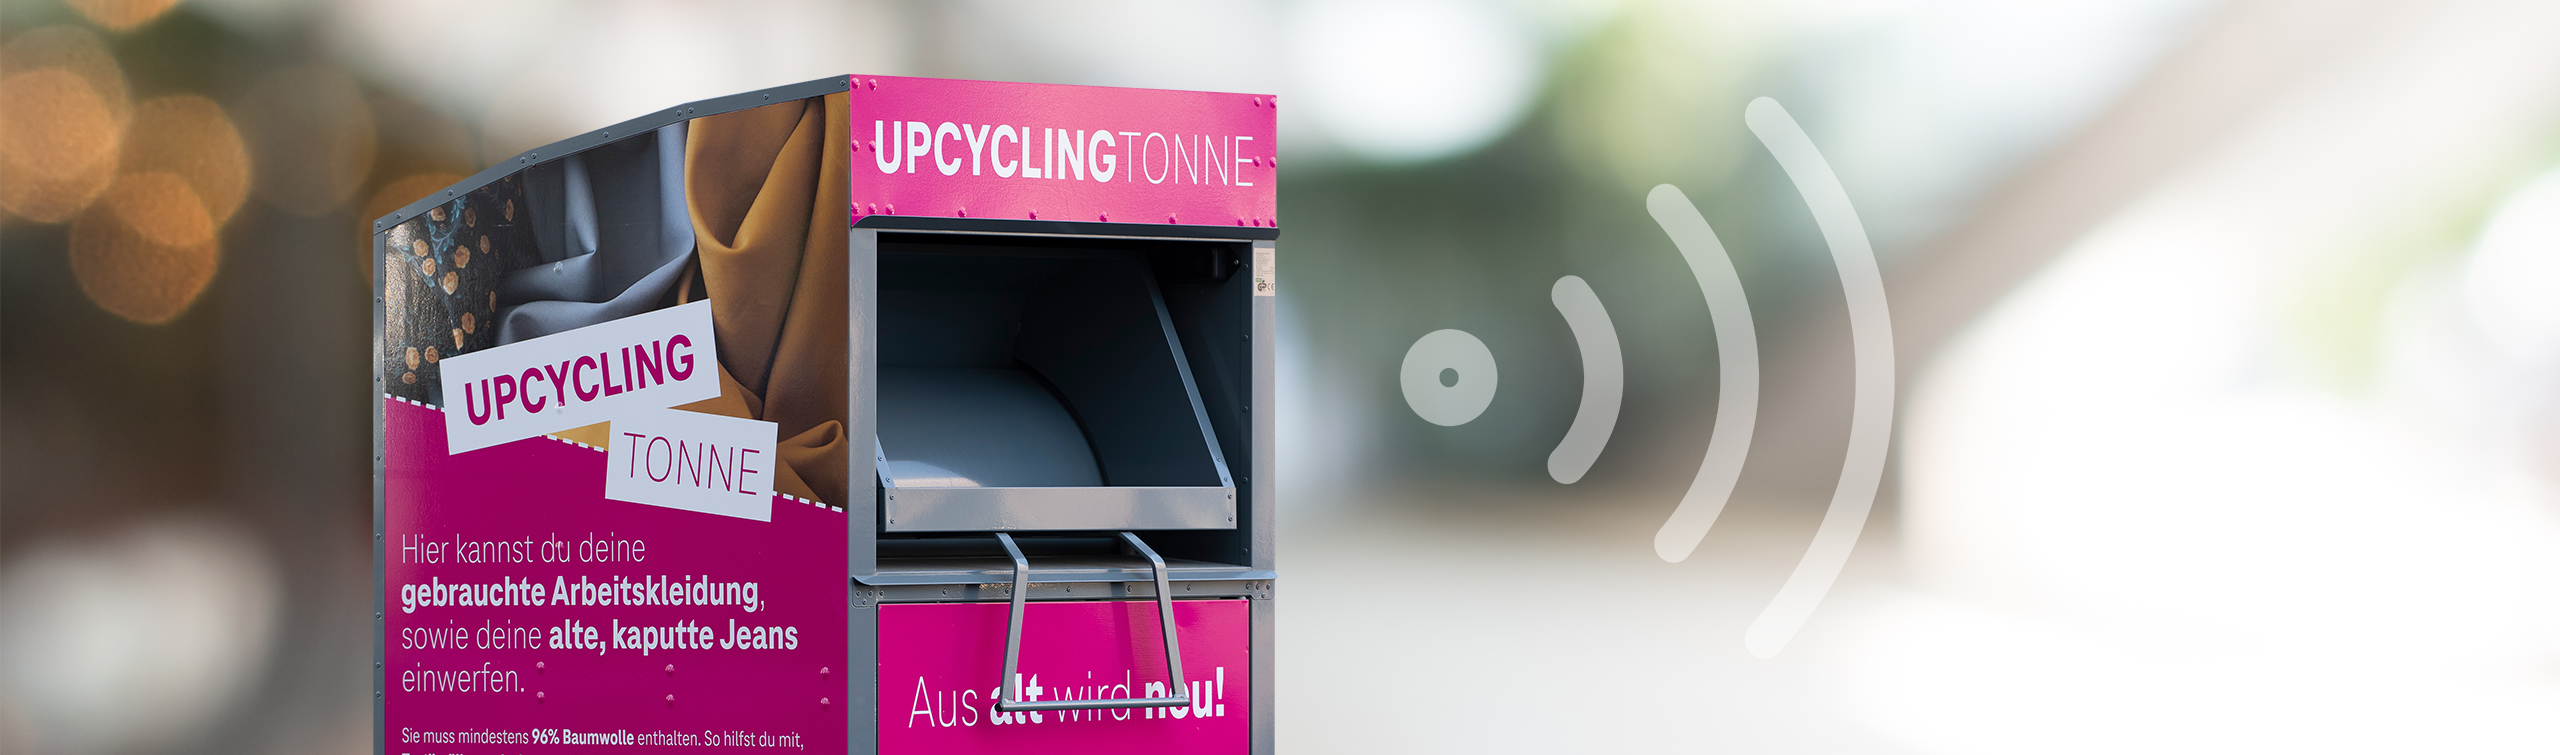 L’IoT au service d’un recyclage optimisé